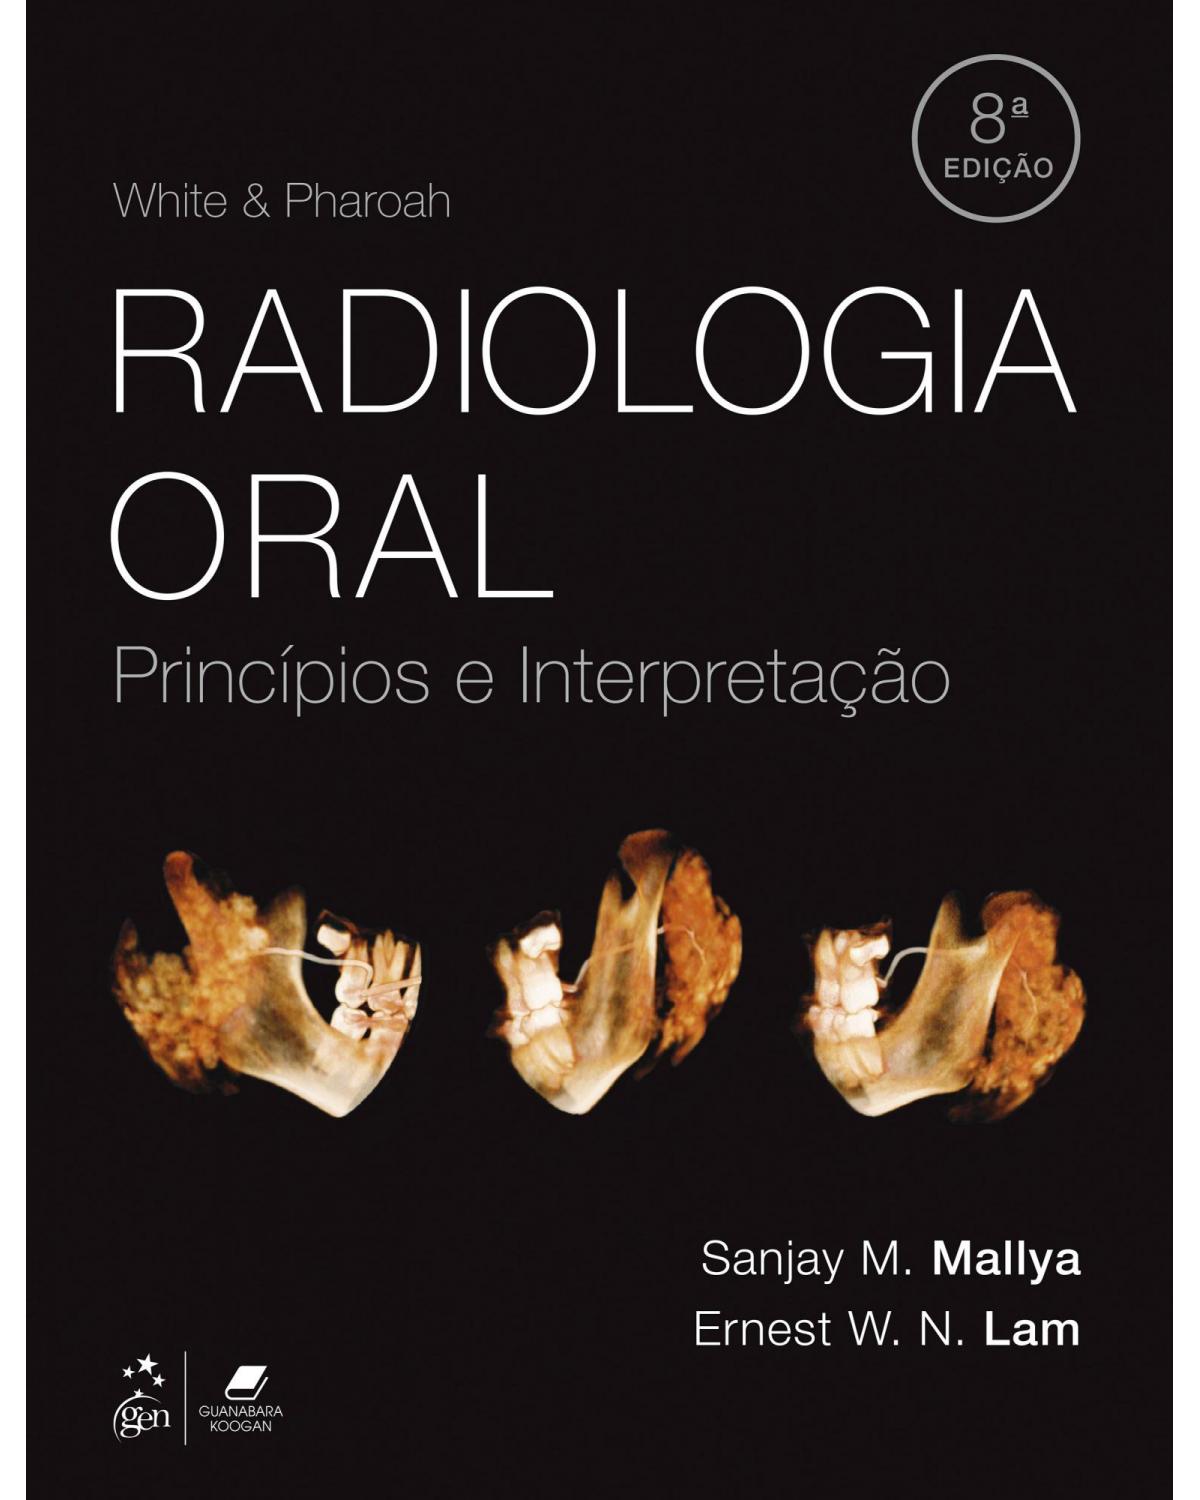 White & Pharoah - Radiologia oral - princípios e interpretação - 8ª Edição | 2020